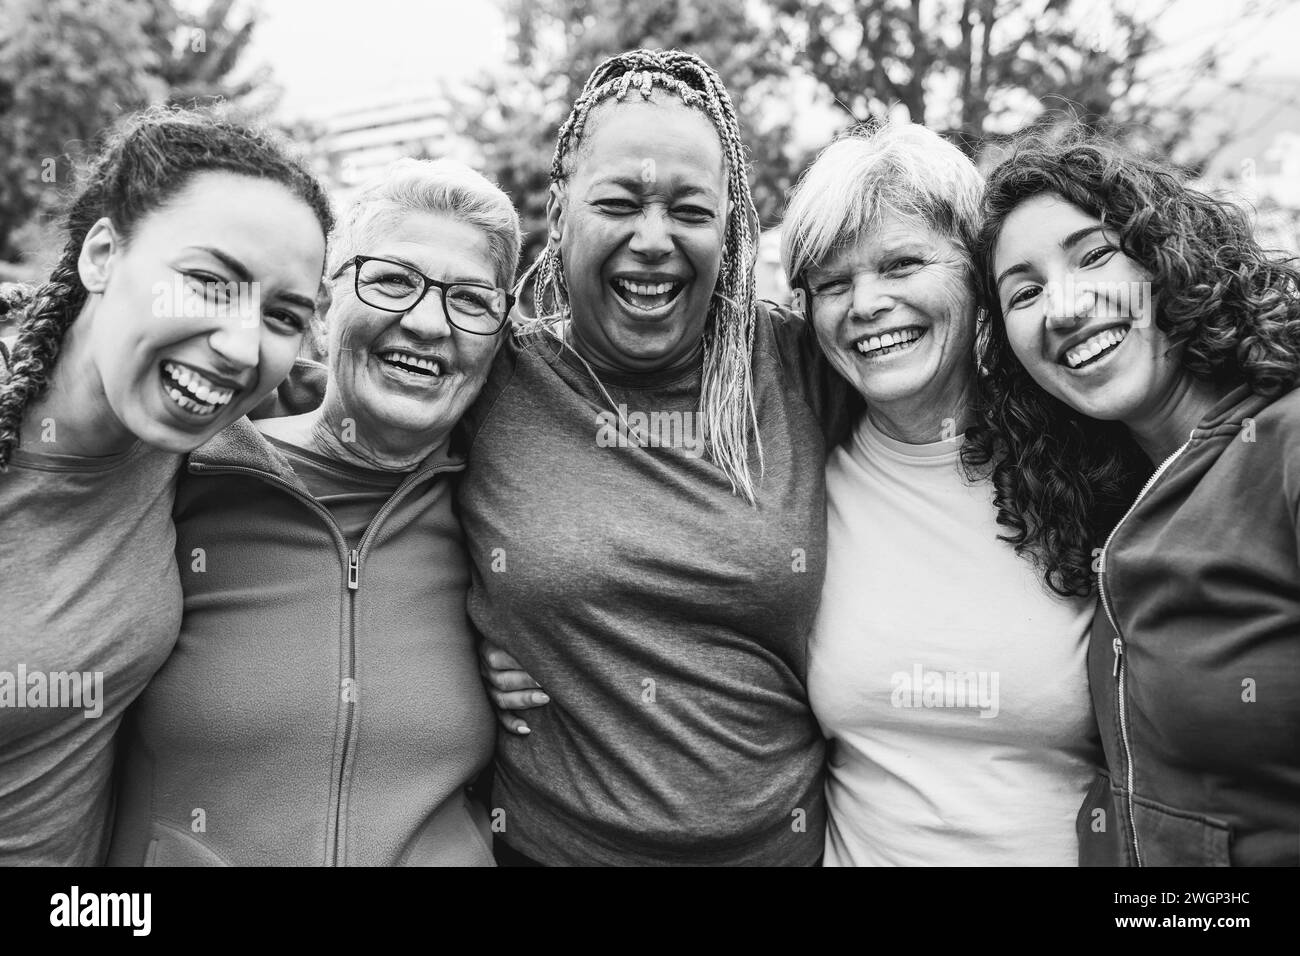 Glückliche Frauen mit mehreren Generationen, die gemeinsam Spaß haben - multirassische Freunde nach dem Sport-Workout im Freien - Hauptfokus auf afrikanisches Frauengesicht Stockfoto